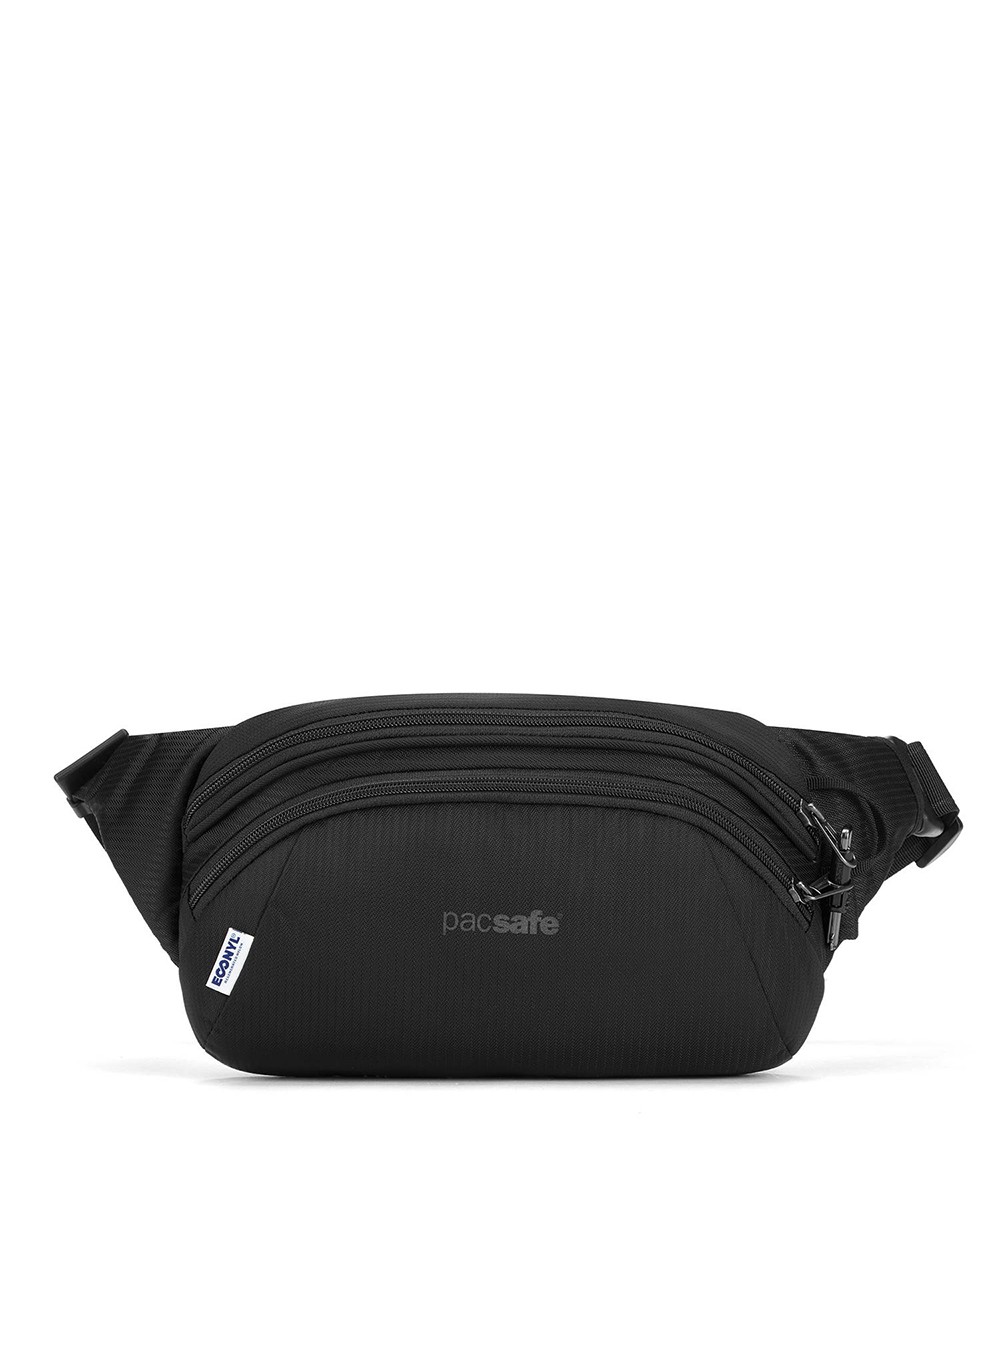 Antykradzieżowa torba biodrowa Pacsafe Metrosafe LS120 hip pack - econyl black